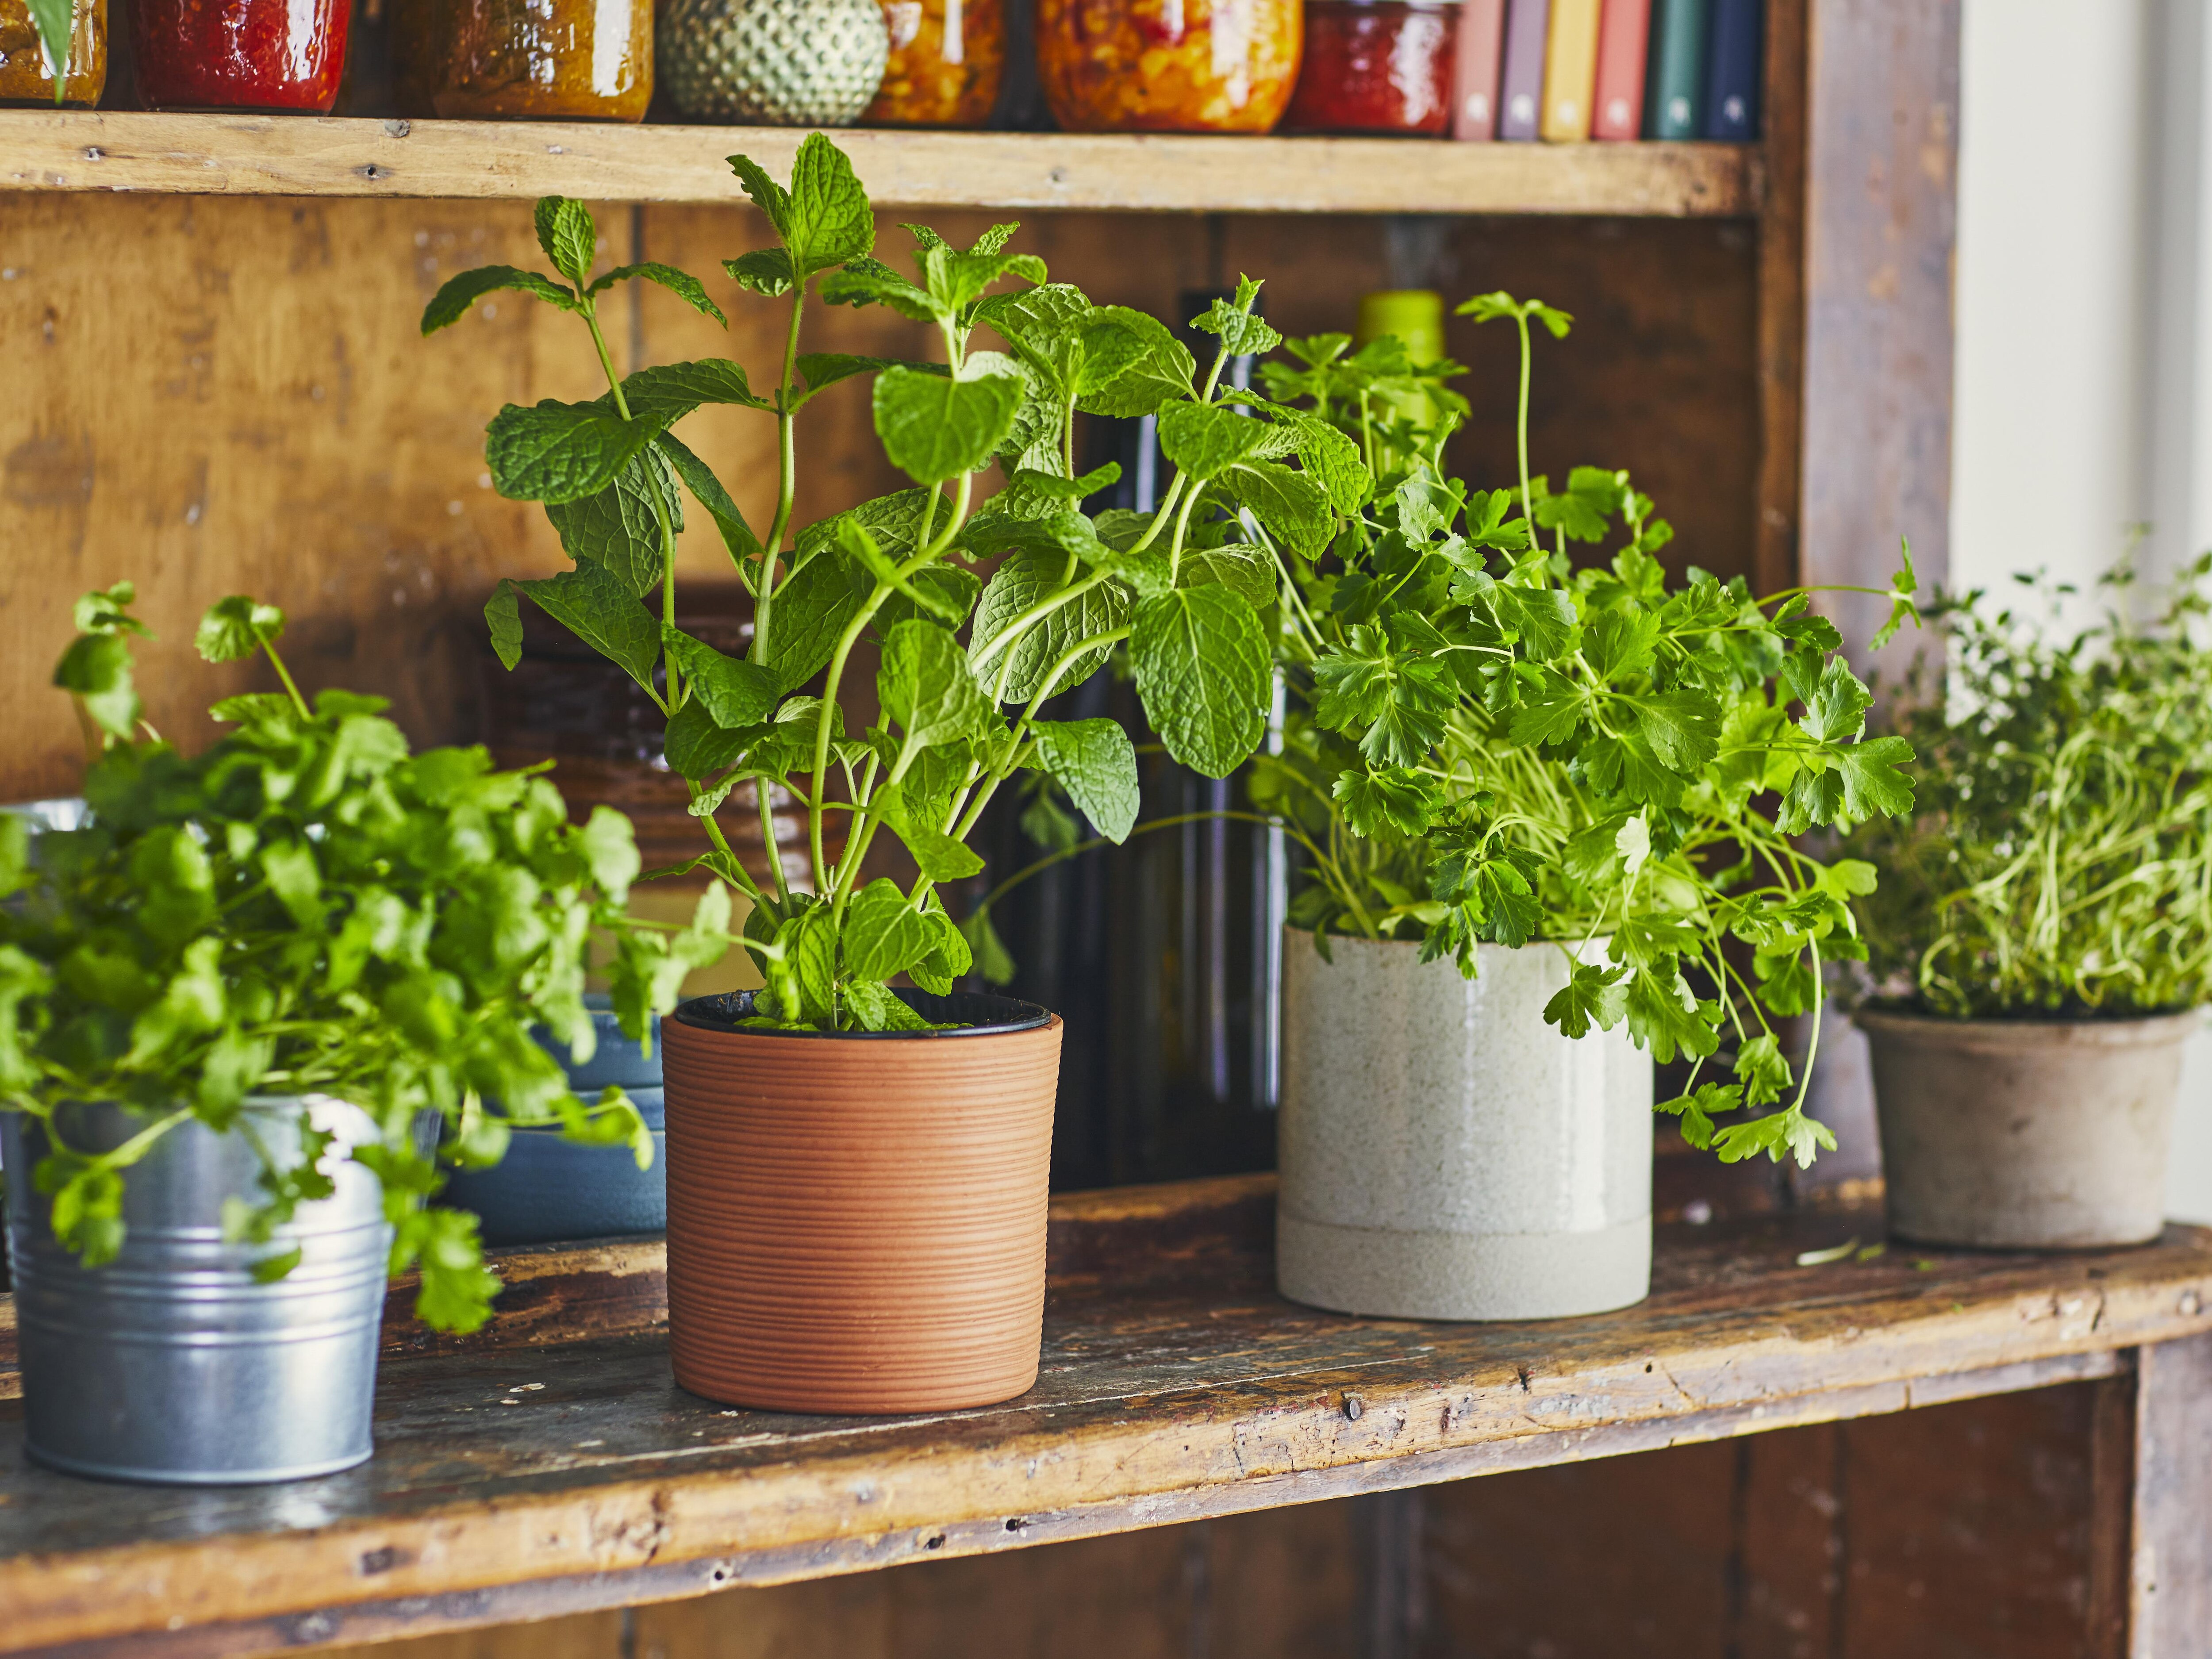 Quel modèle de potager d'intérieur choisir pour vos légumes et fines herbes?